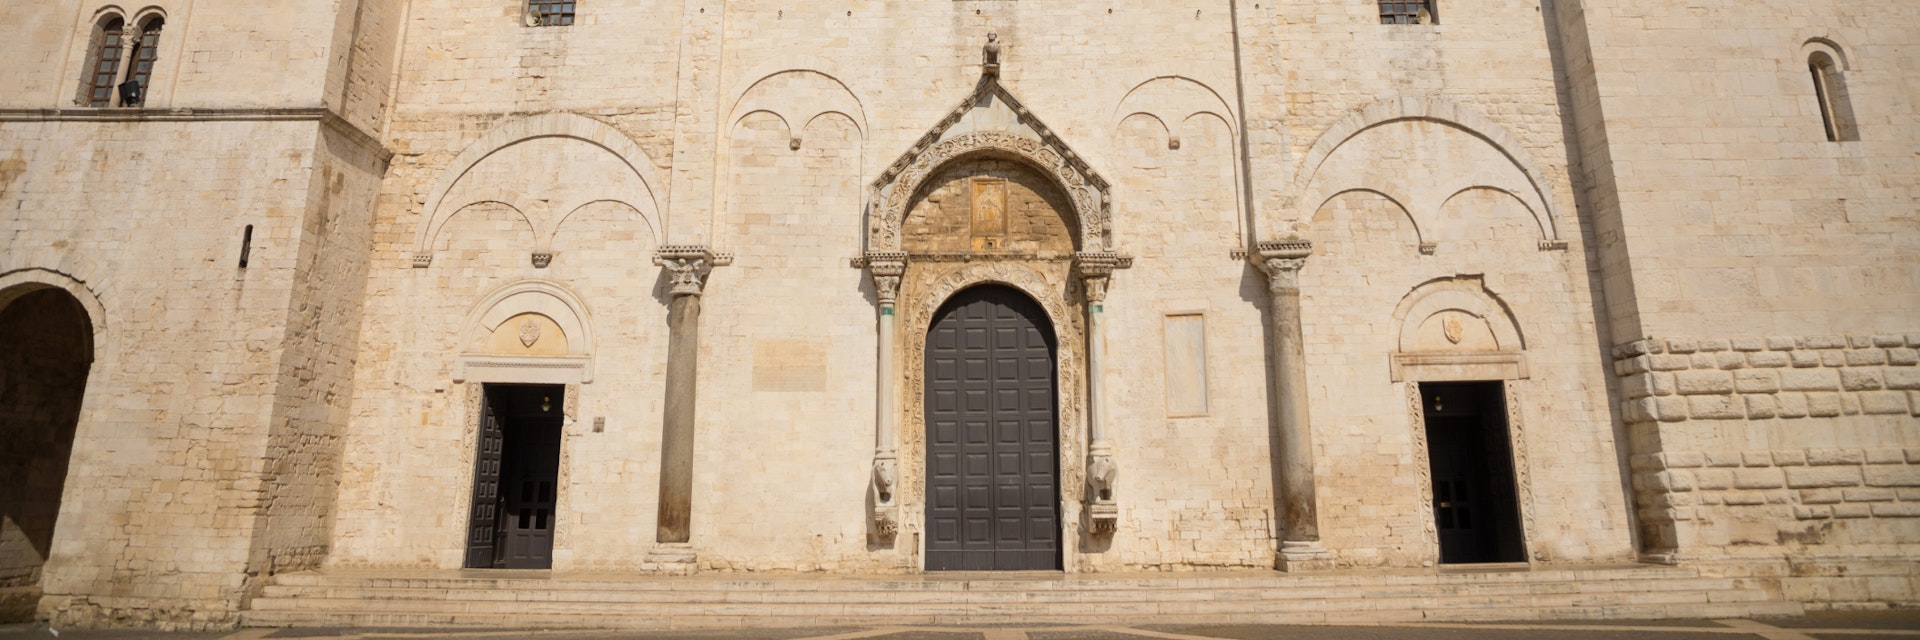 Bari, Italy - 5 May, 2018: Famous Saint Nicholas Saint Nicholas Basilica in old part of city Bari, Italy